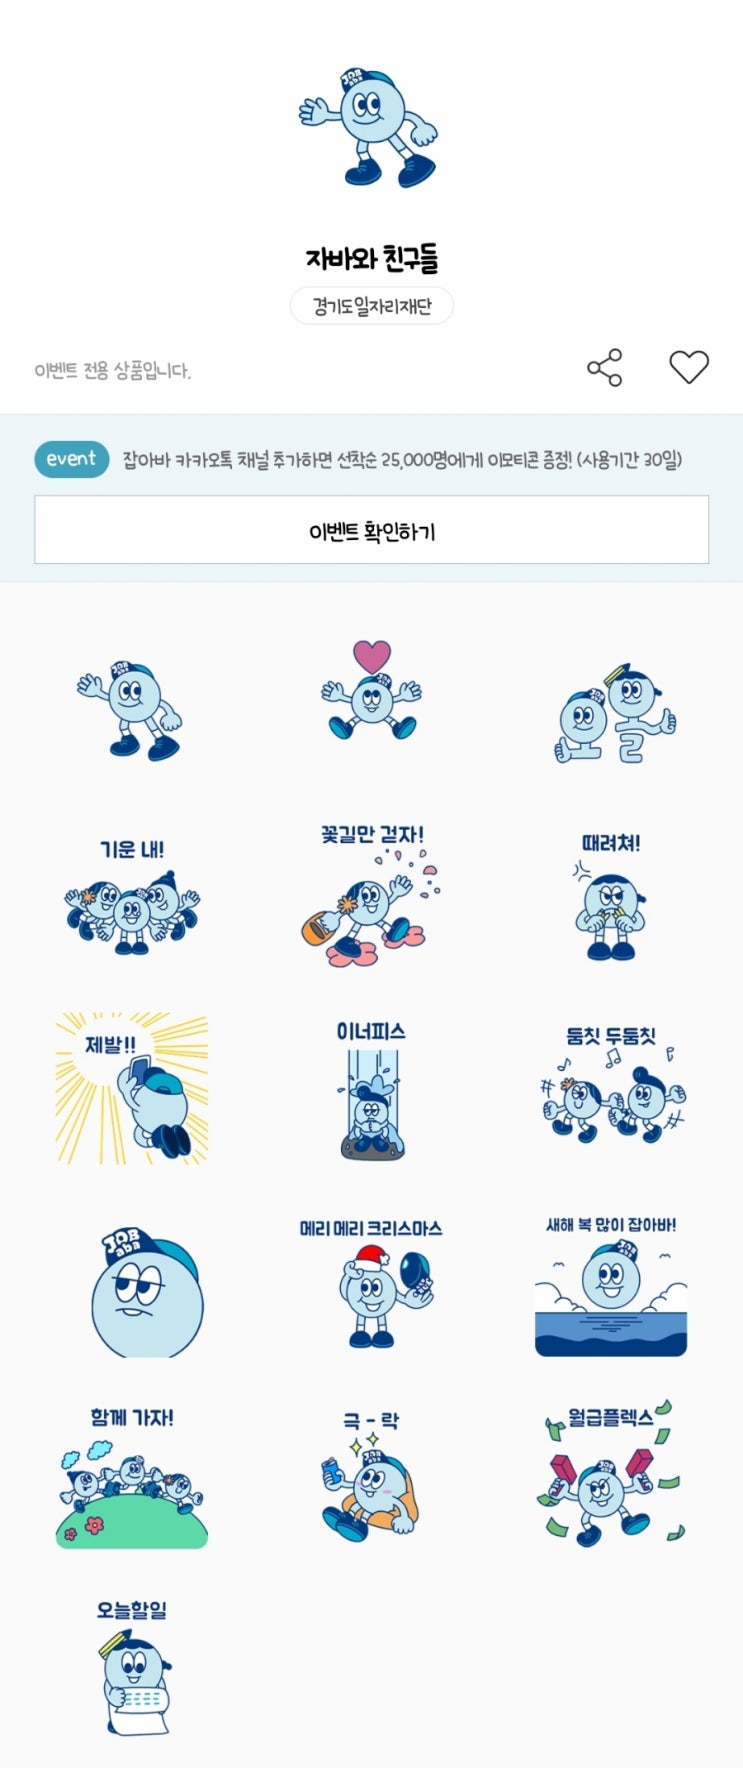 카카오톡 무료 이모티콘_자바와 친구들_경기도일자리재단 잡아바